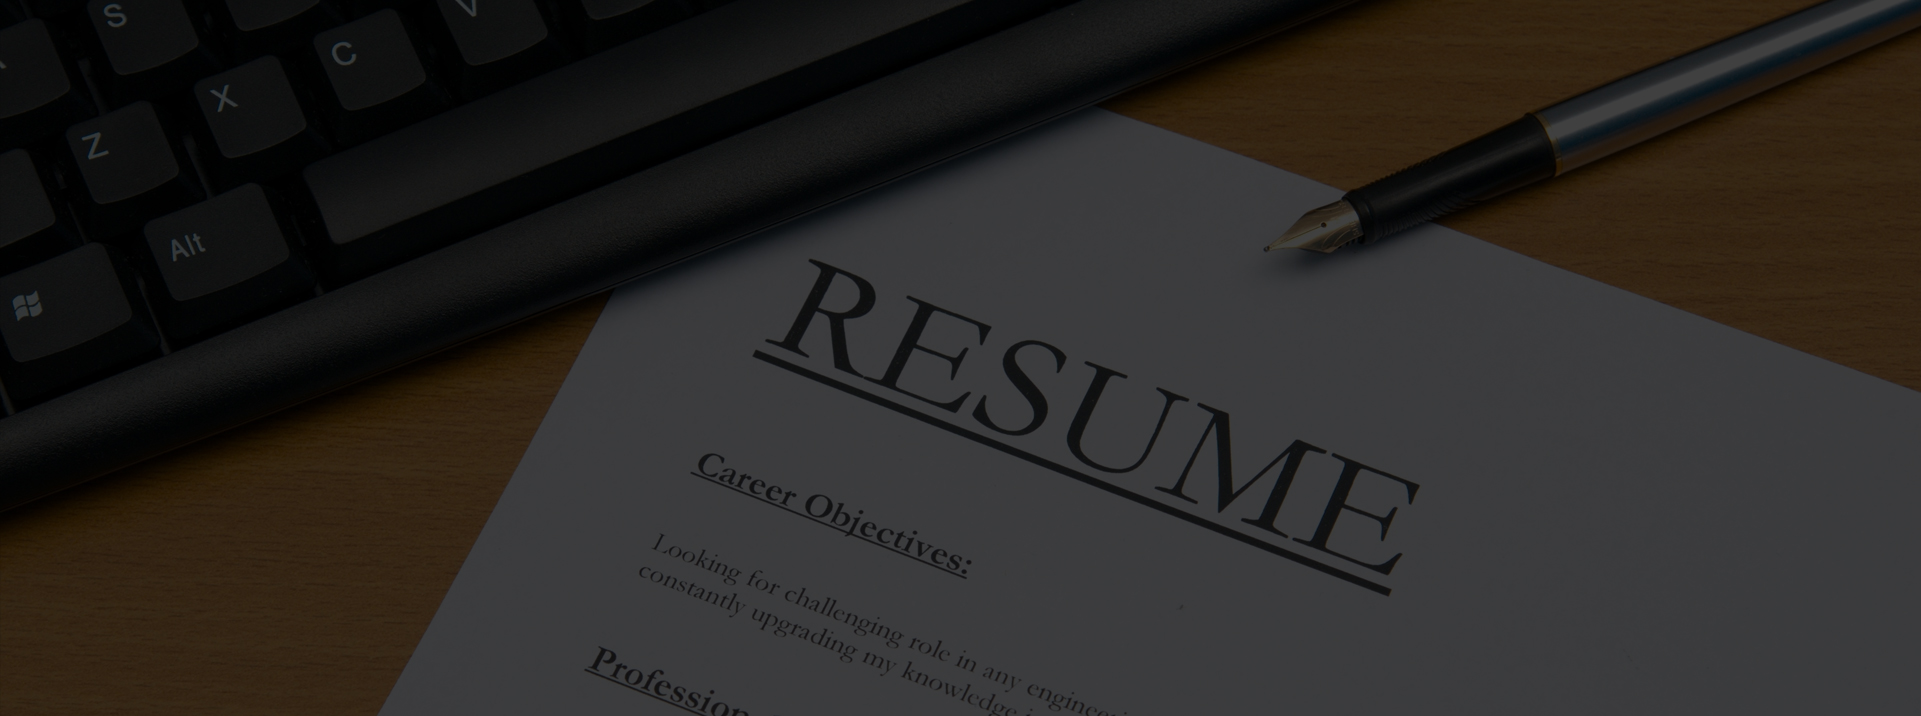 resume-banner